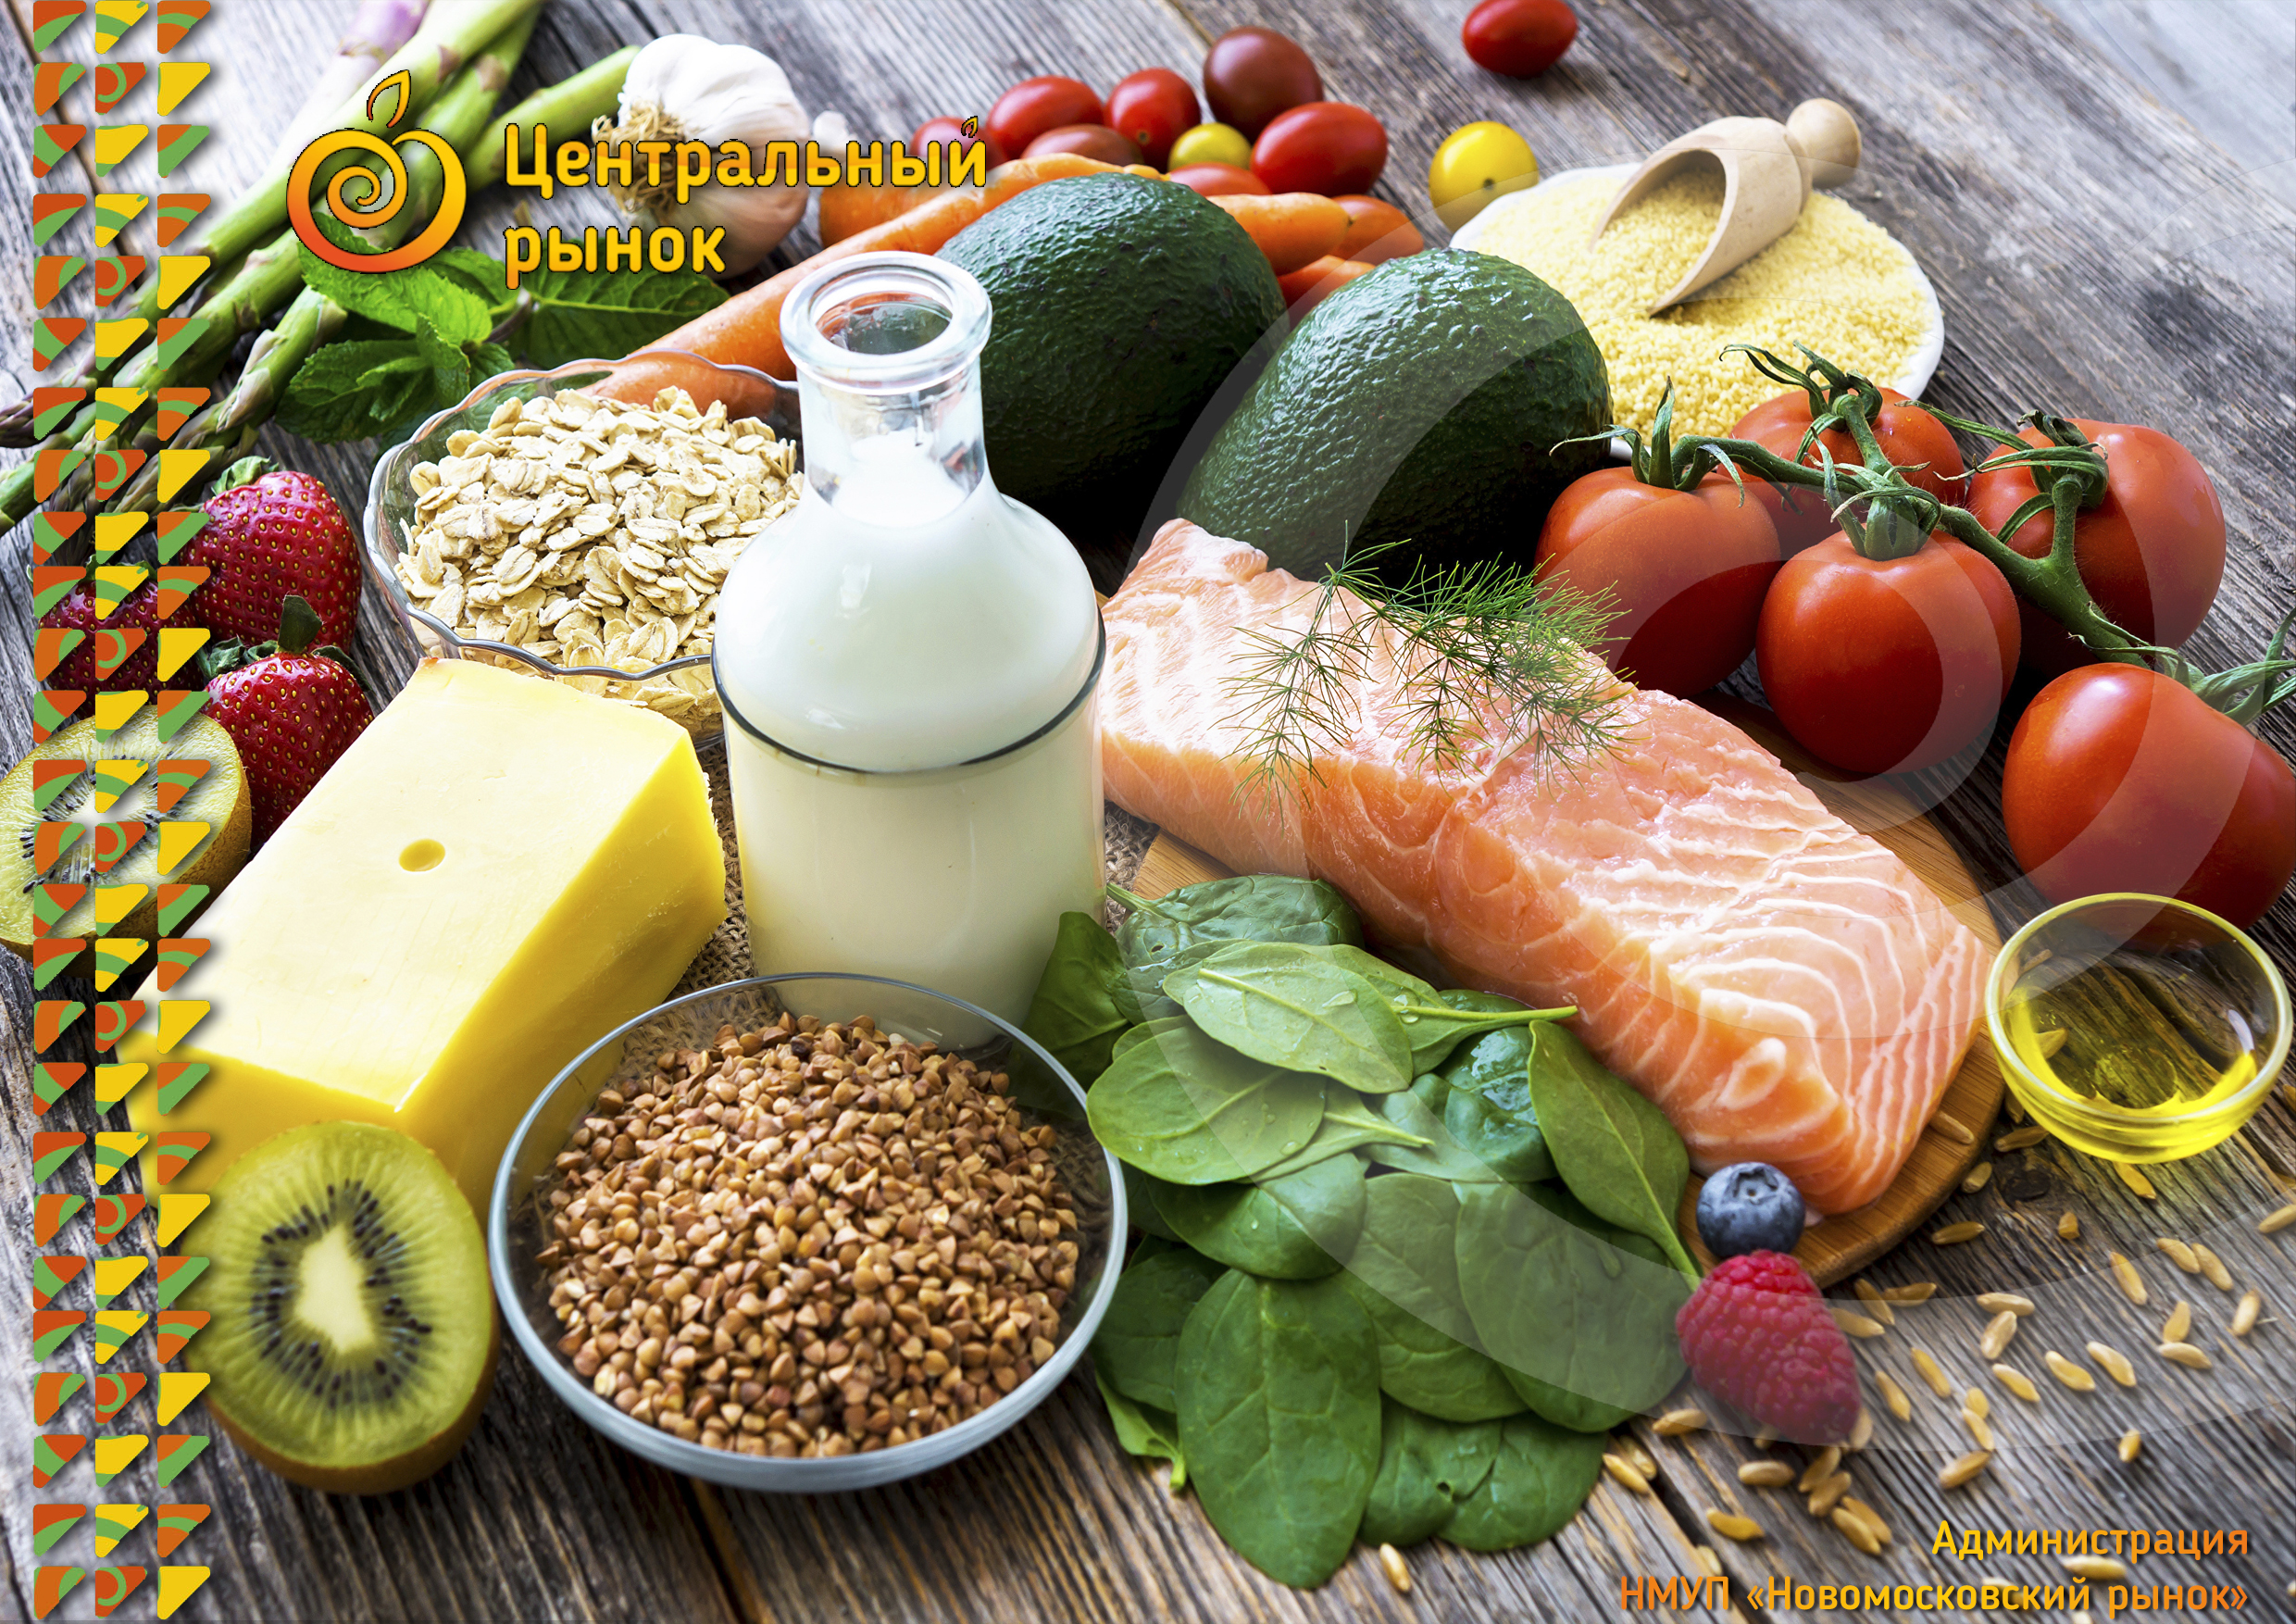 Dietary vitamins. Полезные продукты. Полезные продукты питания. Здоровое питание. Здоровая и полезная пища.